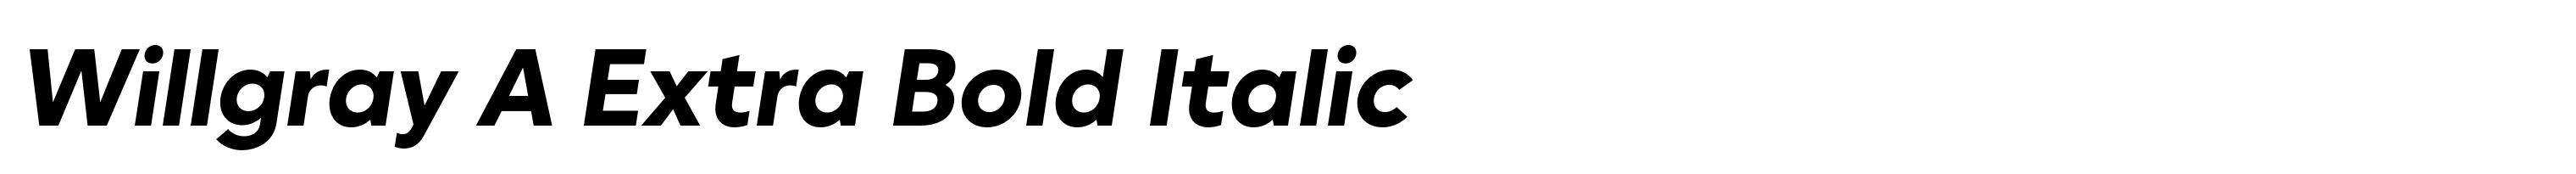 Willgray A Extra Bold Italic